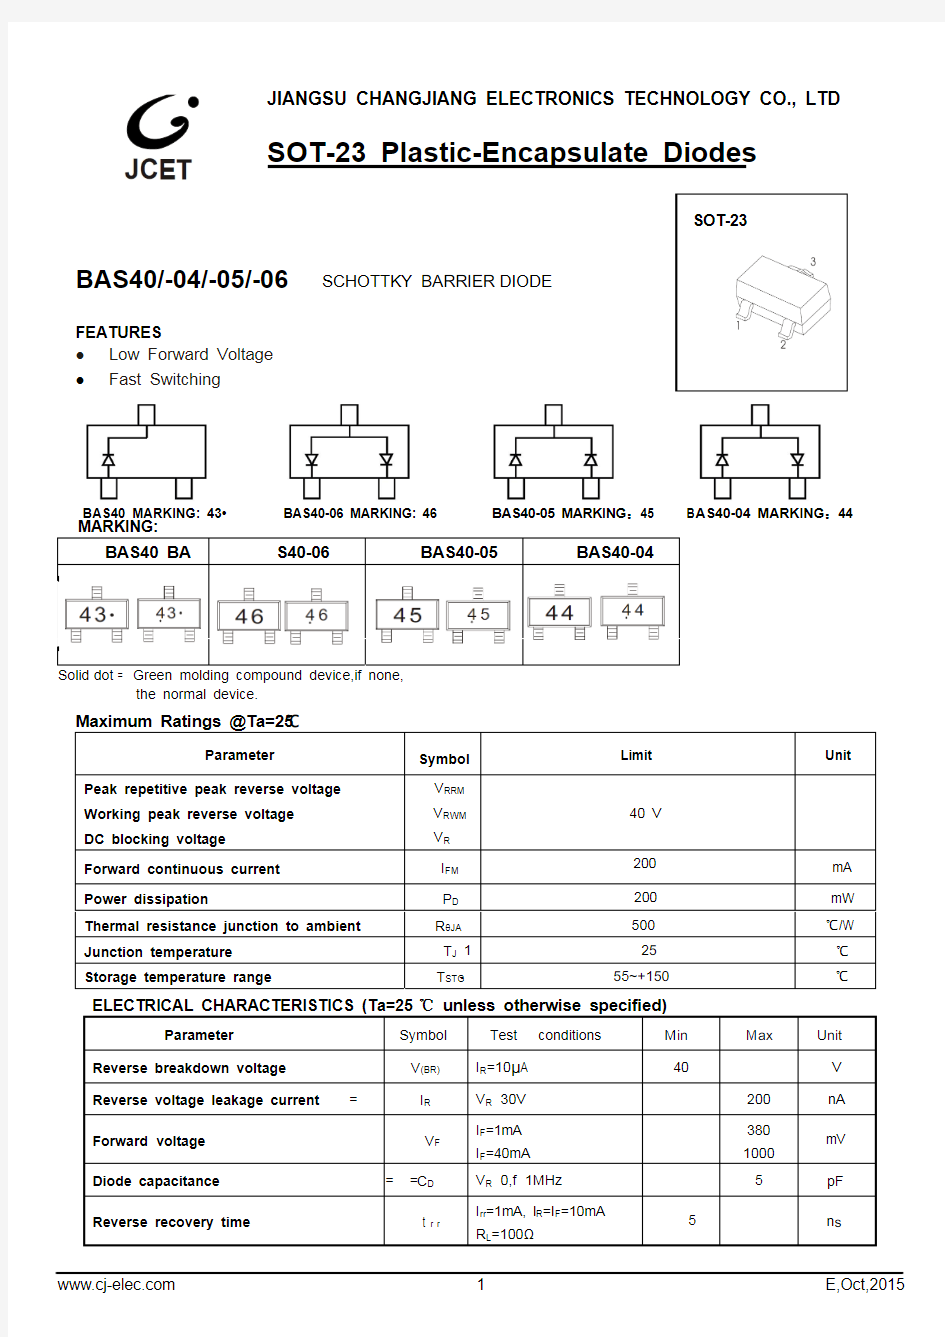 贴片肖特基二极管 BAS40-04 SOT-23 规格书推荐